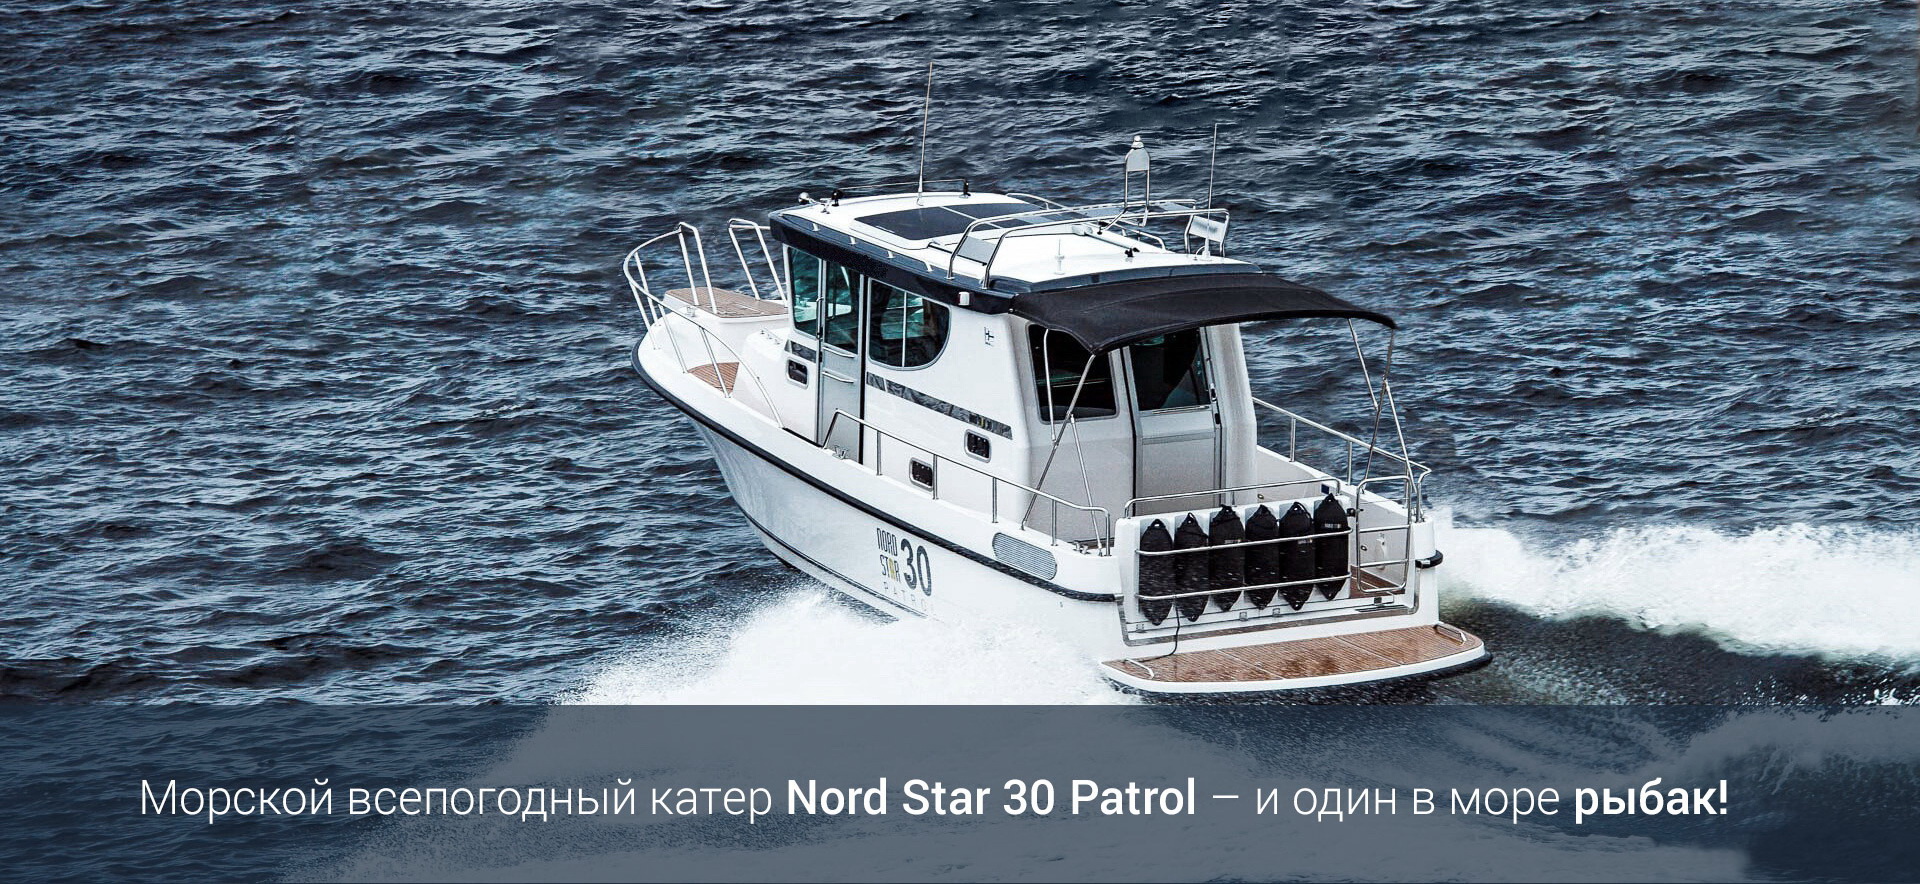 Морской всепогодный катер Nord Star 30 Patrol – и один в море рыбак!